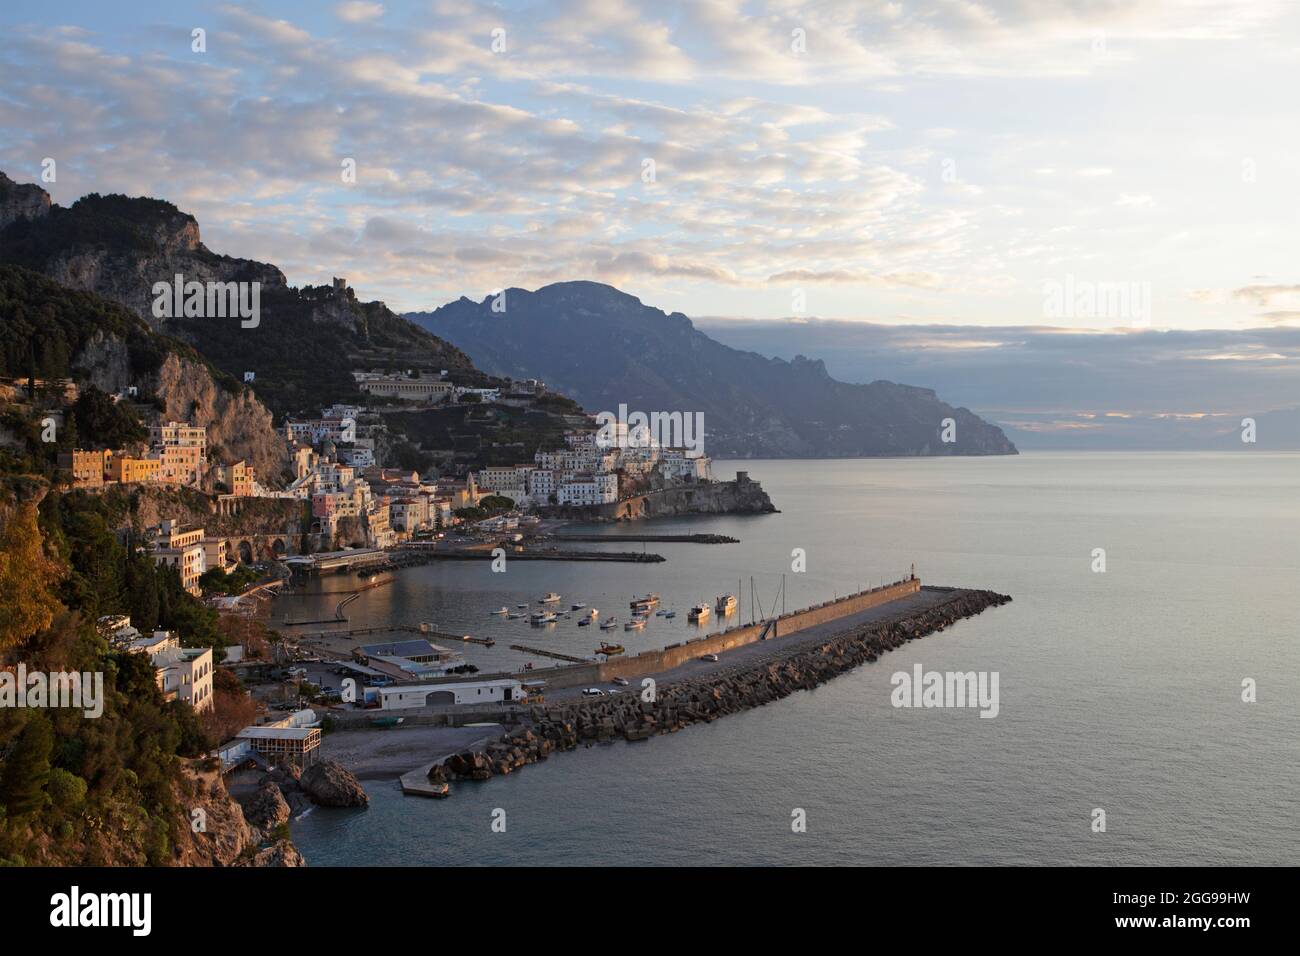 Sunrise at Amalfi, Salerno province, Italy Stock Photo